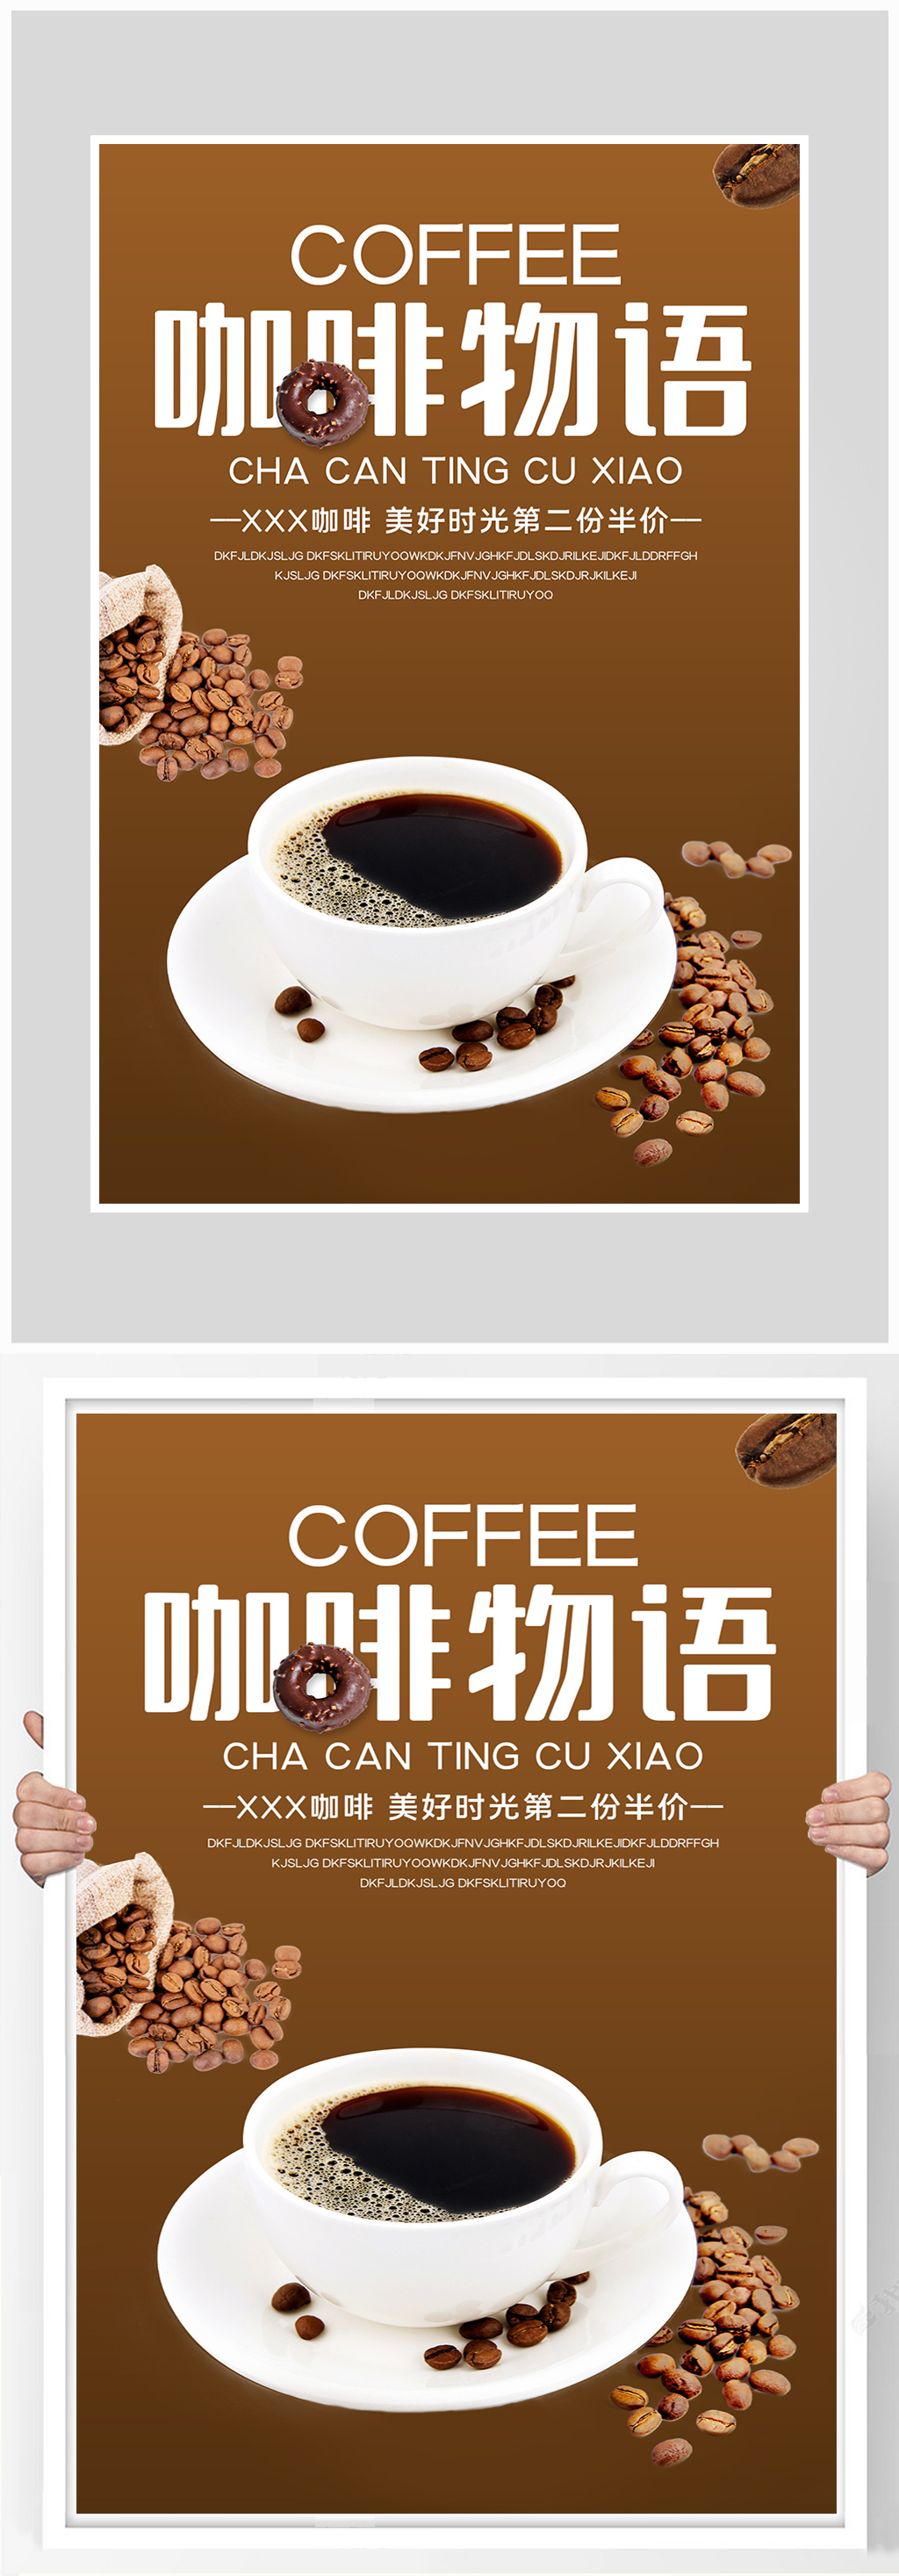 创意唯美咖啡销售海报设计